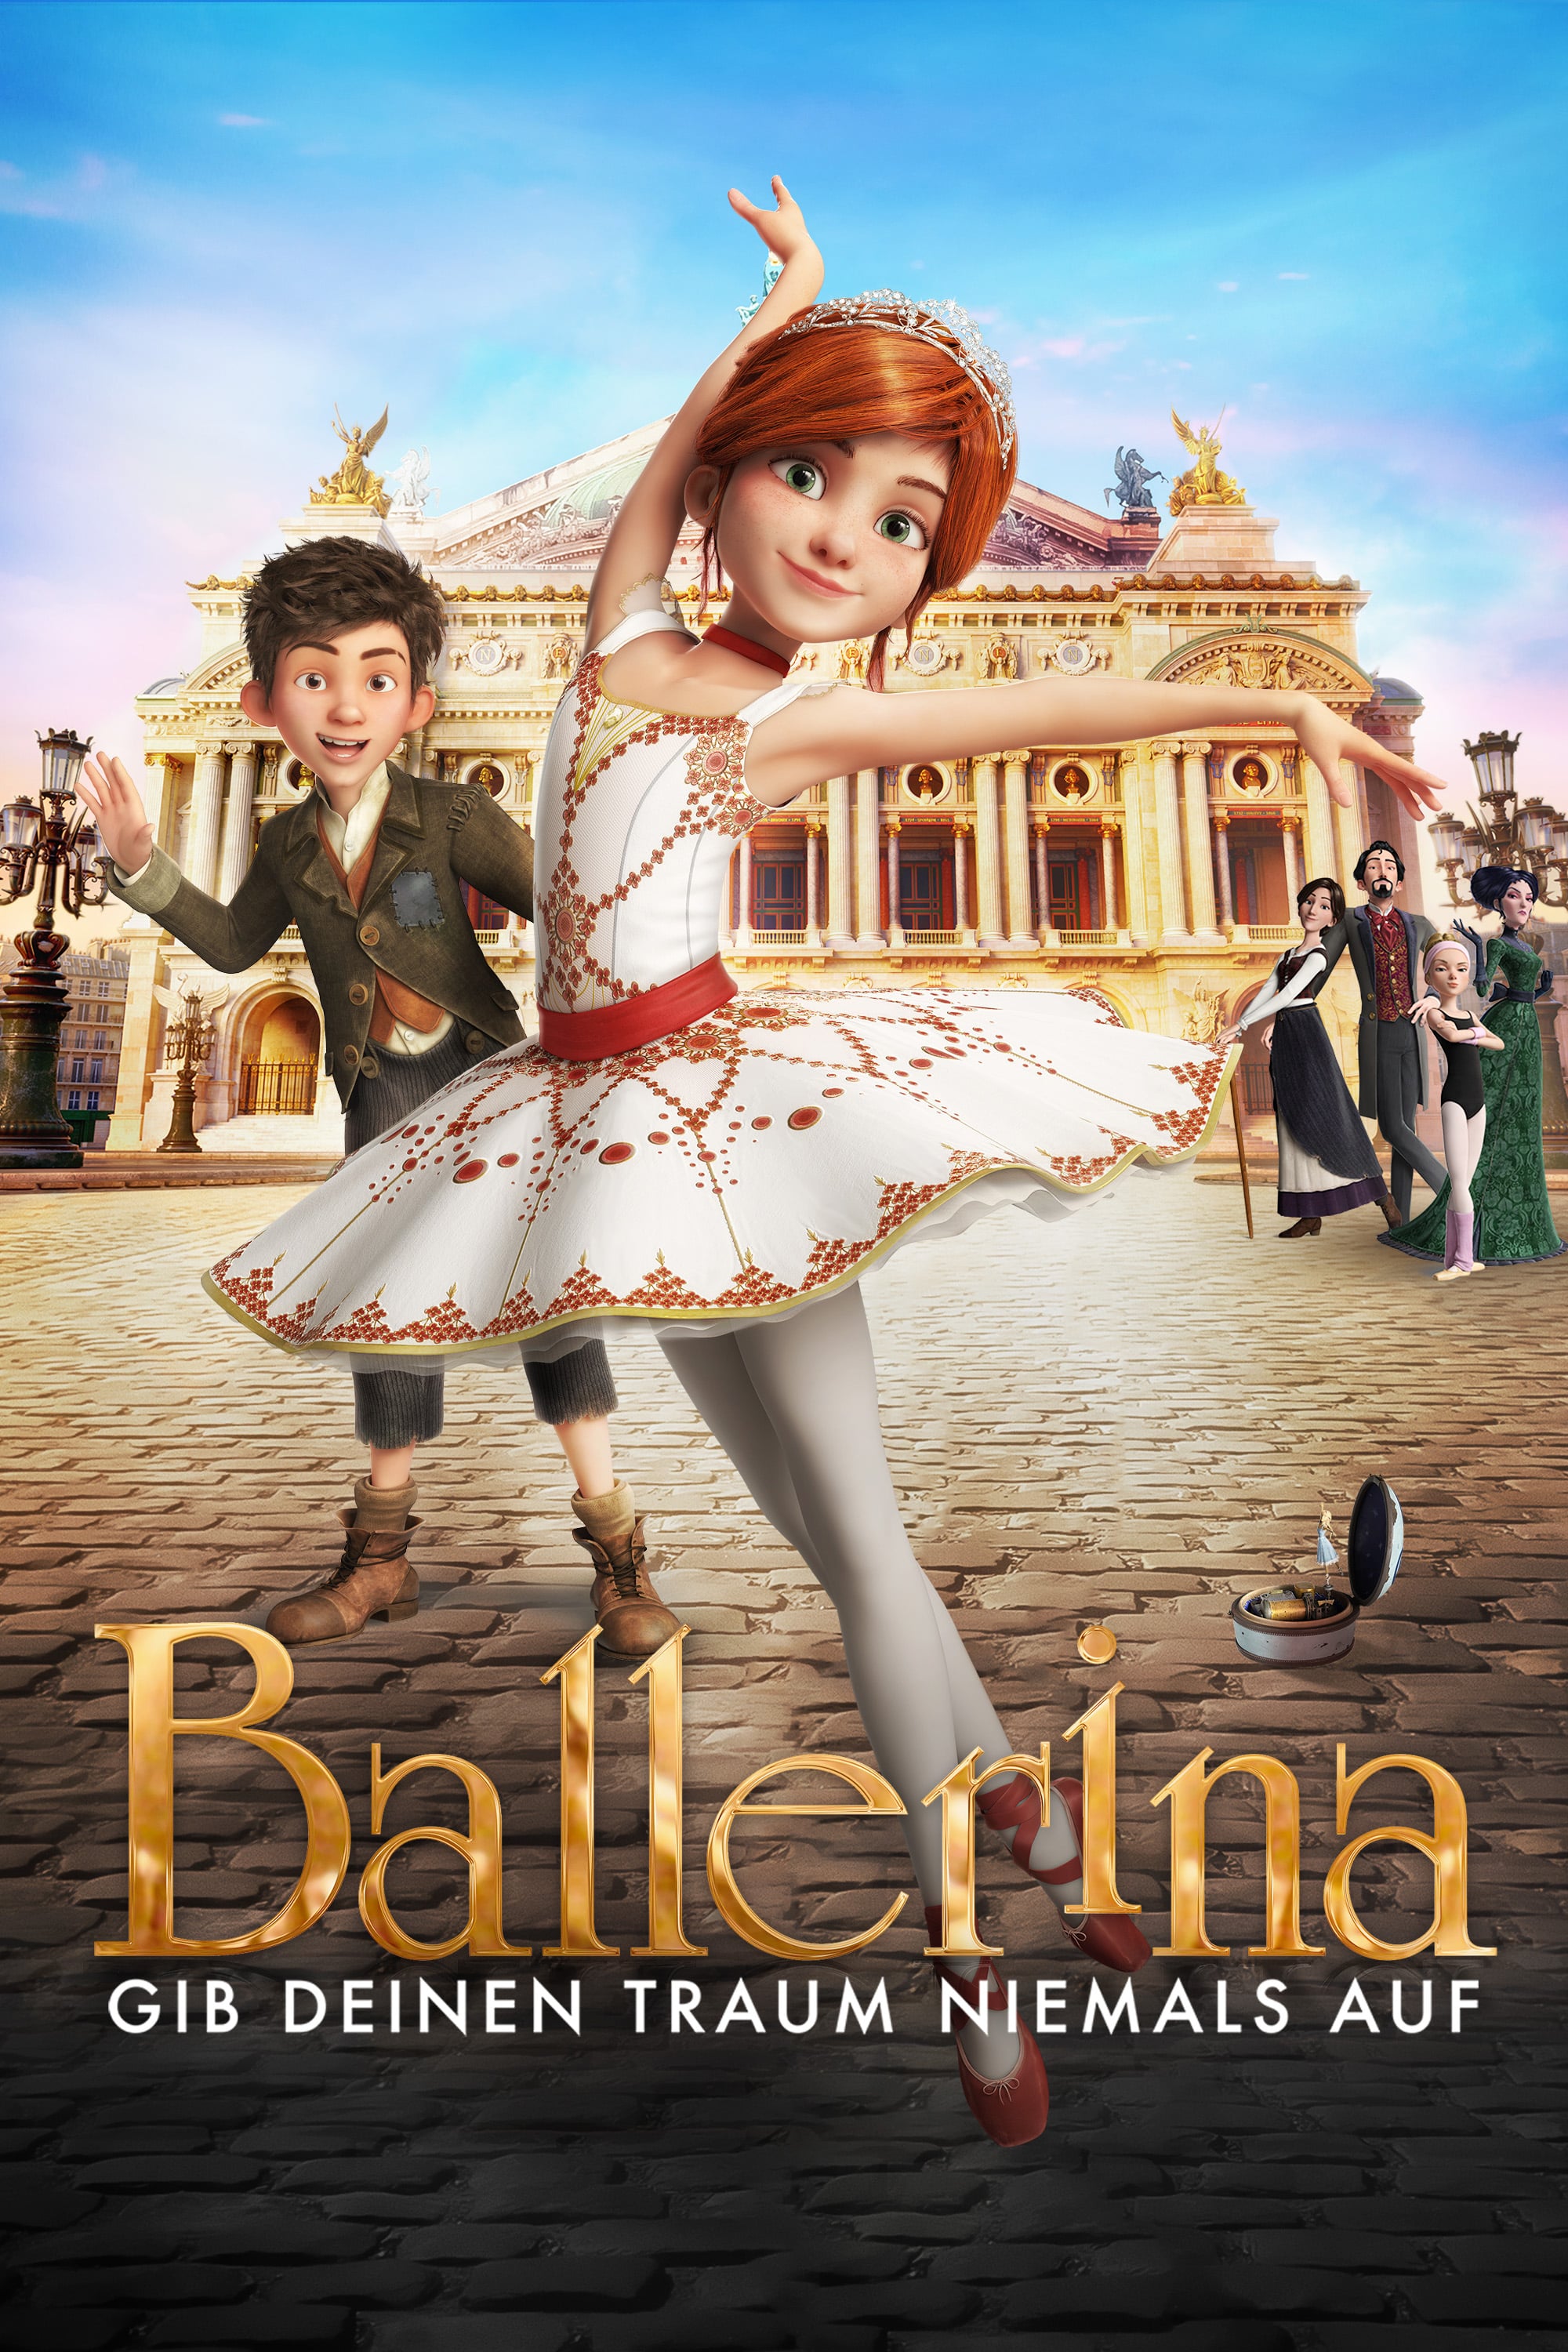 Plakat von "Ballerina"